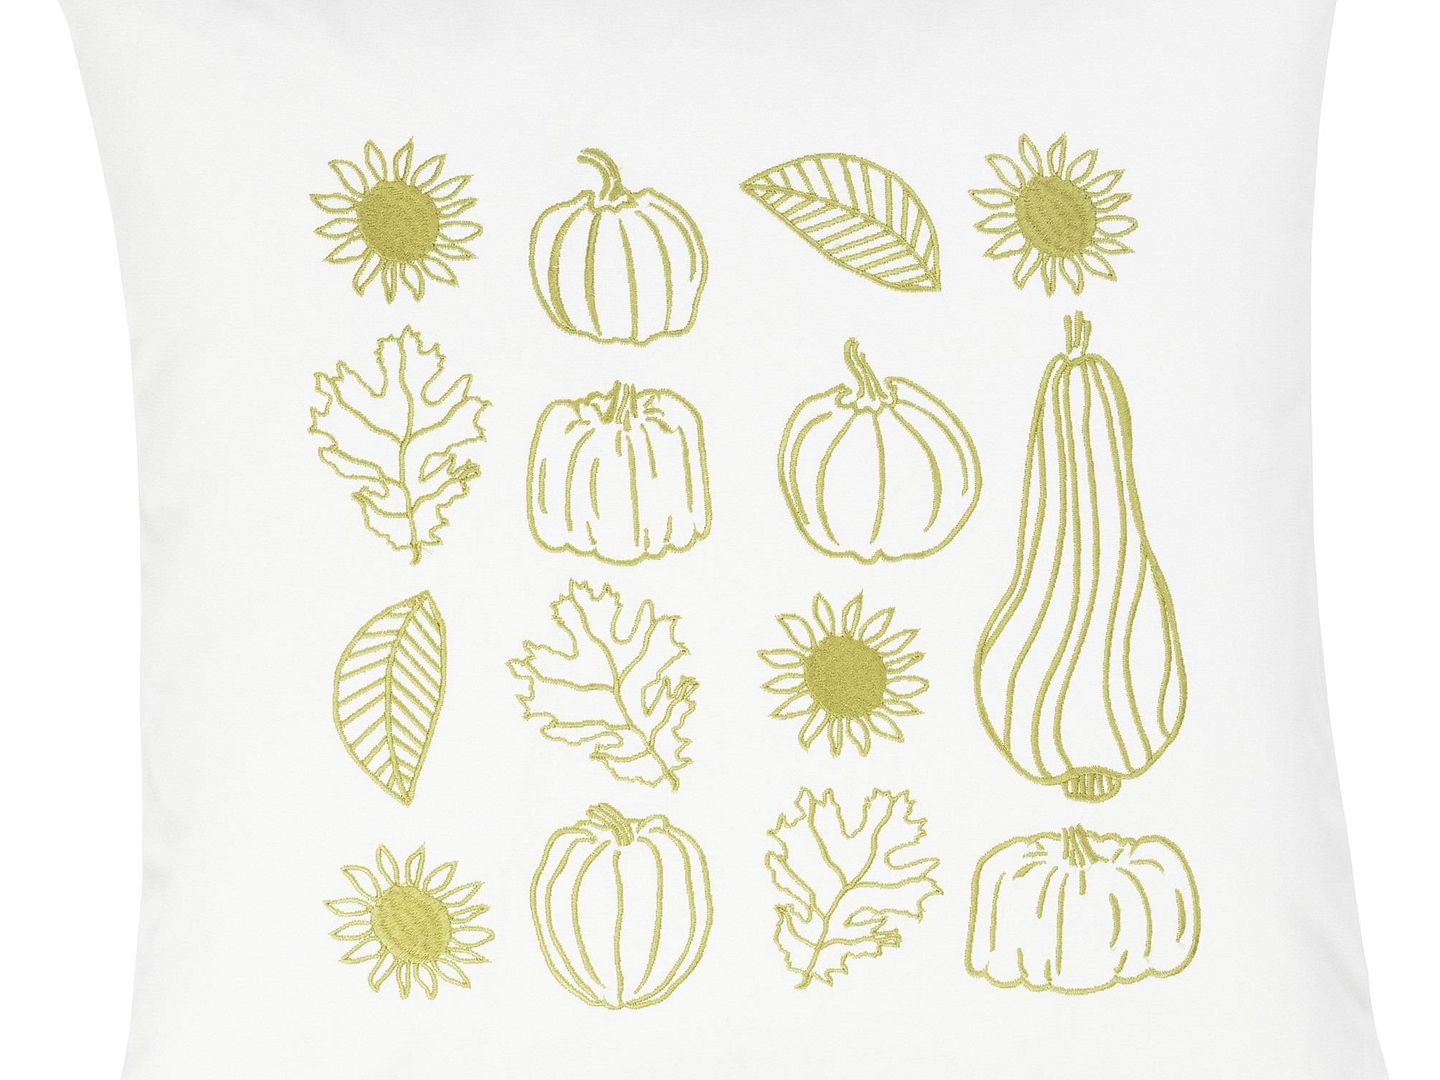 Ikea lanza su colección inspirada en el otoño. (Cortesía)